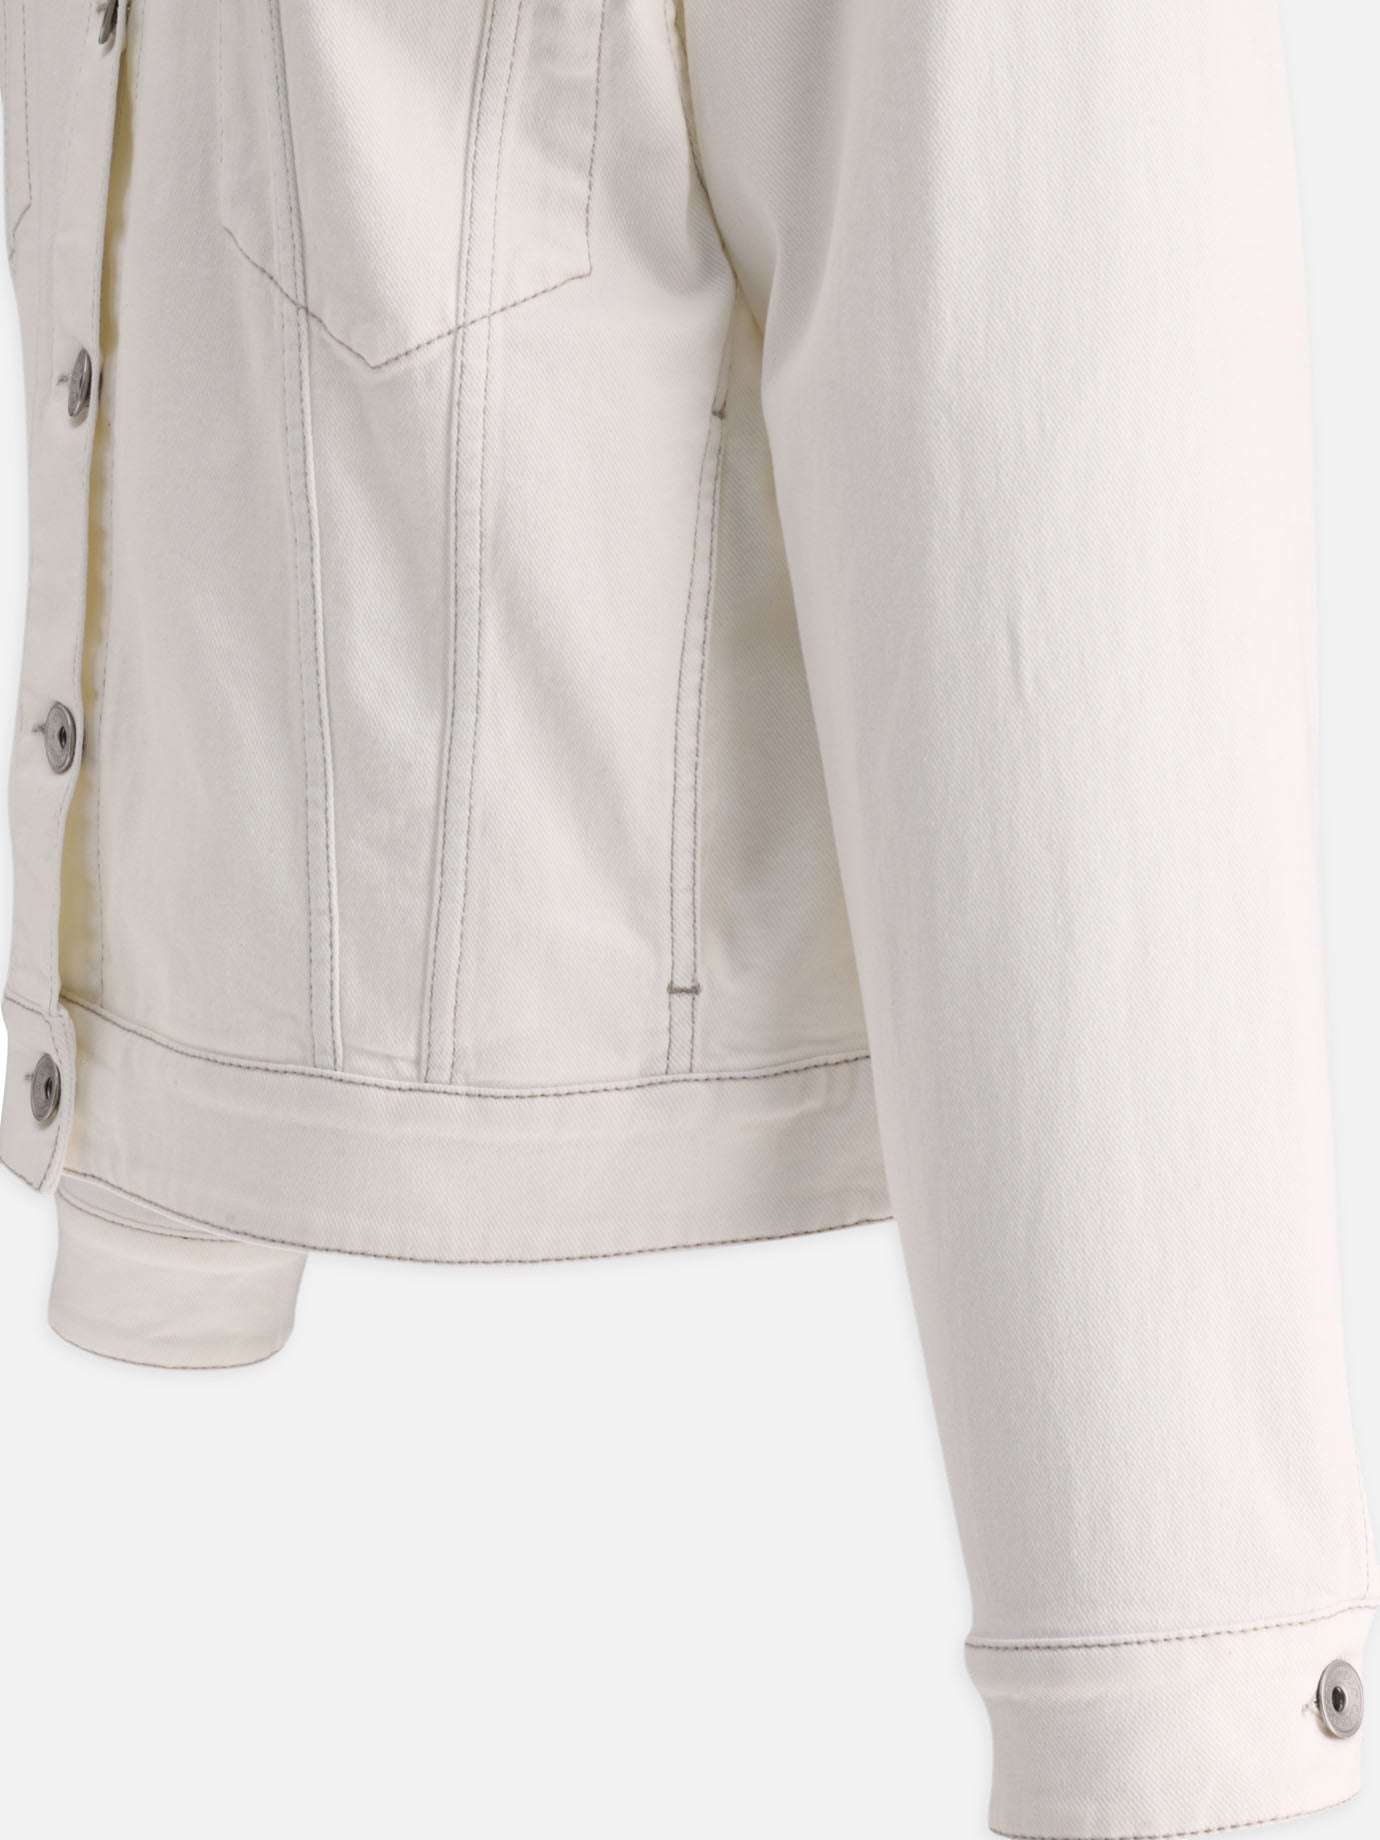 Denim jacket with pockets